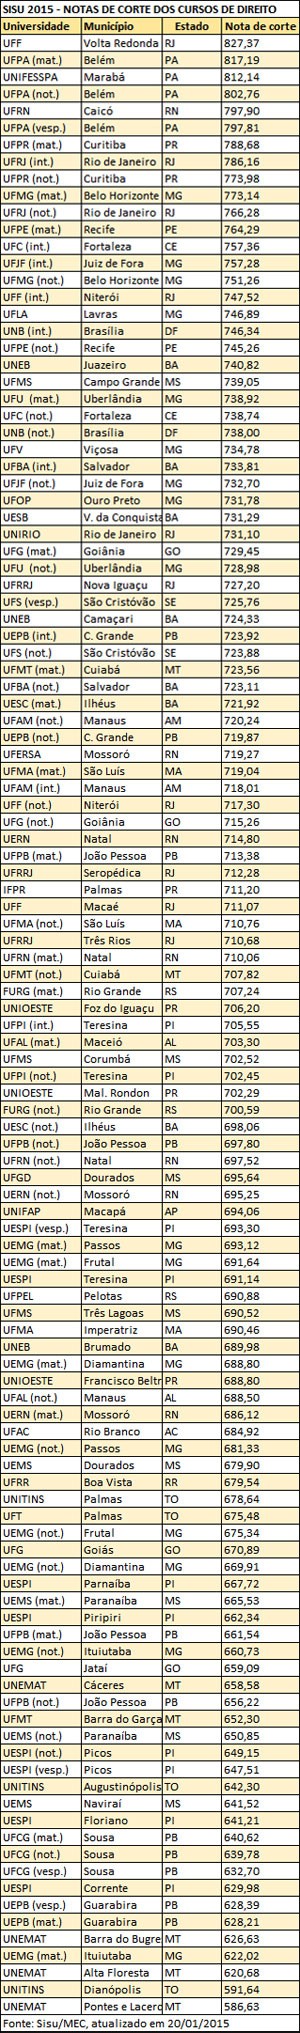 G1 - Curso de medicina da Ufac tem menor nota de corte do país no Sisu 2015  - notícias em Acre